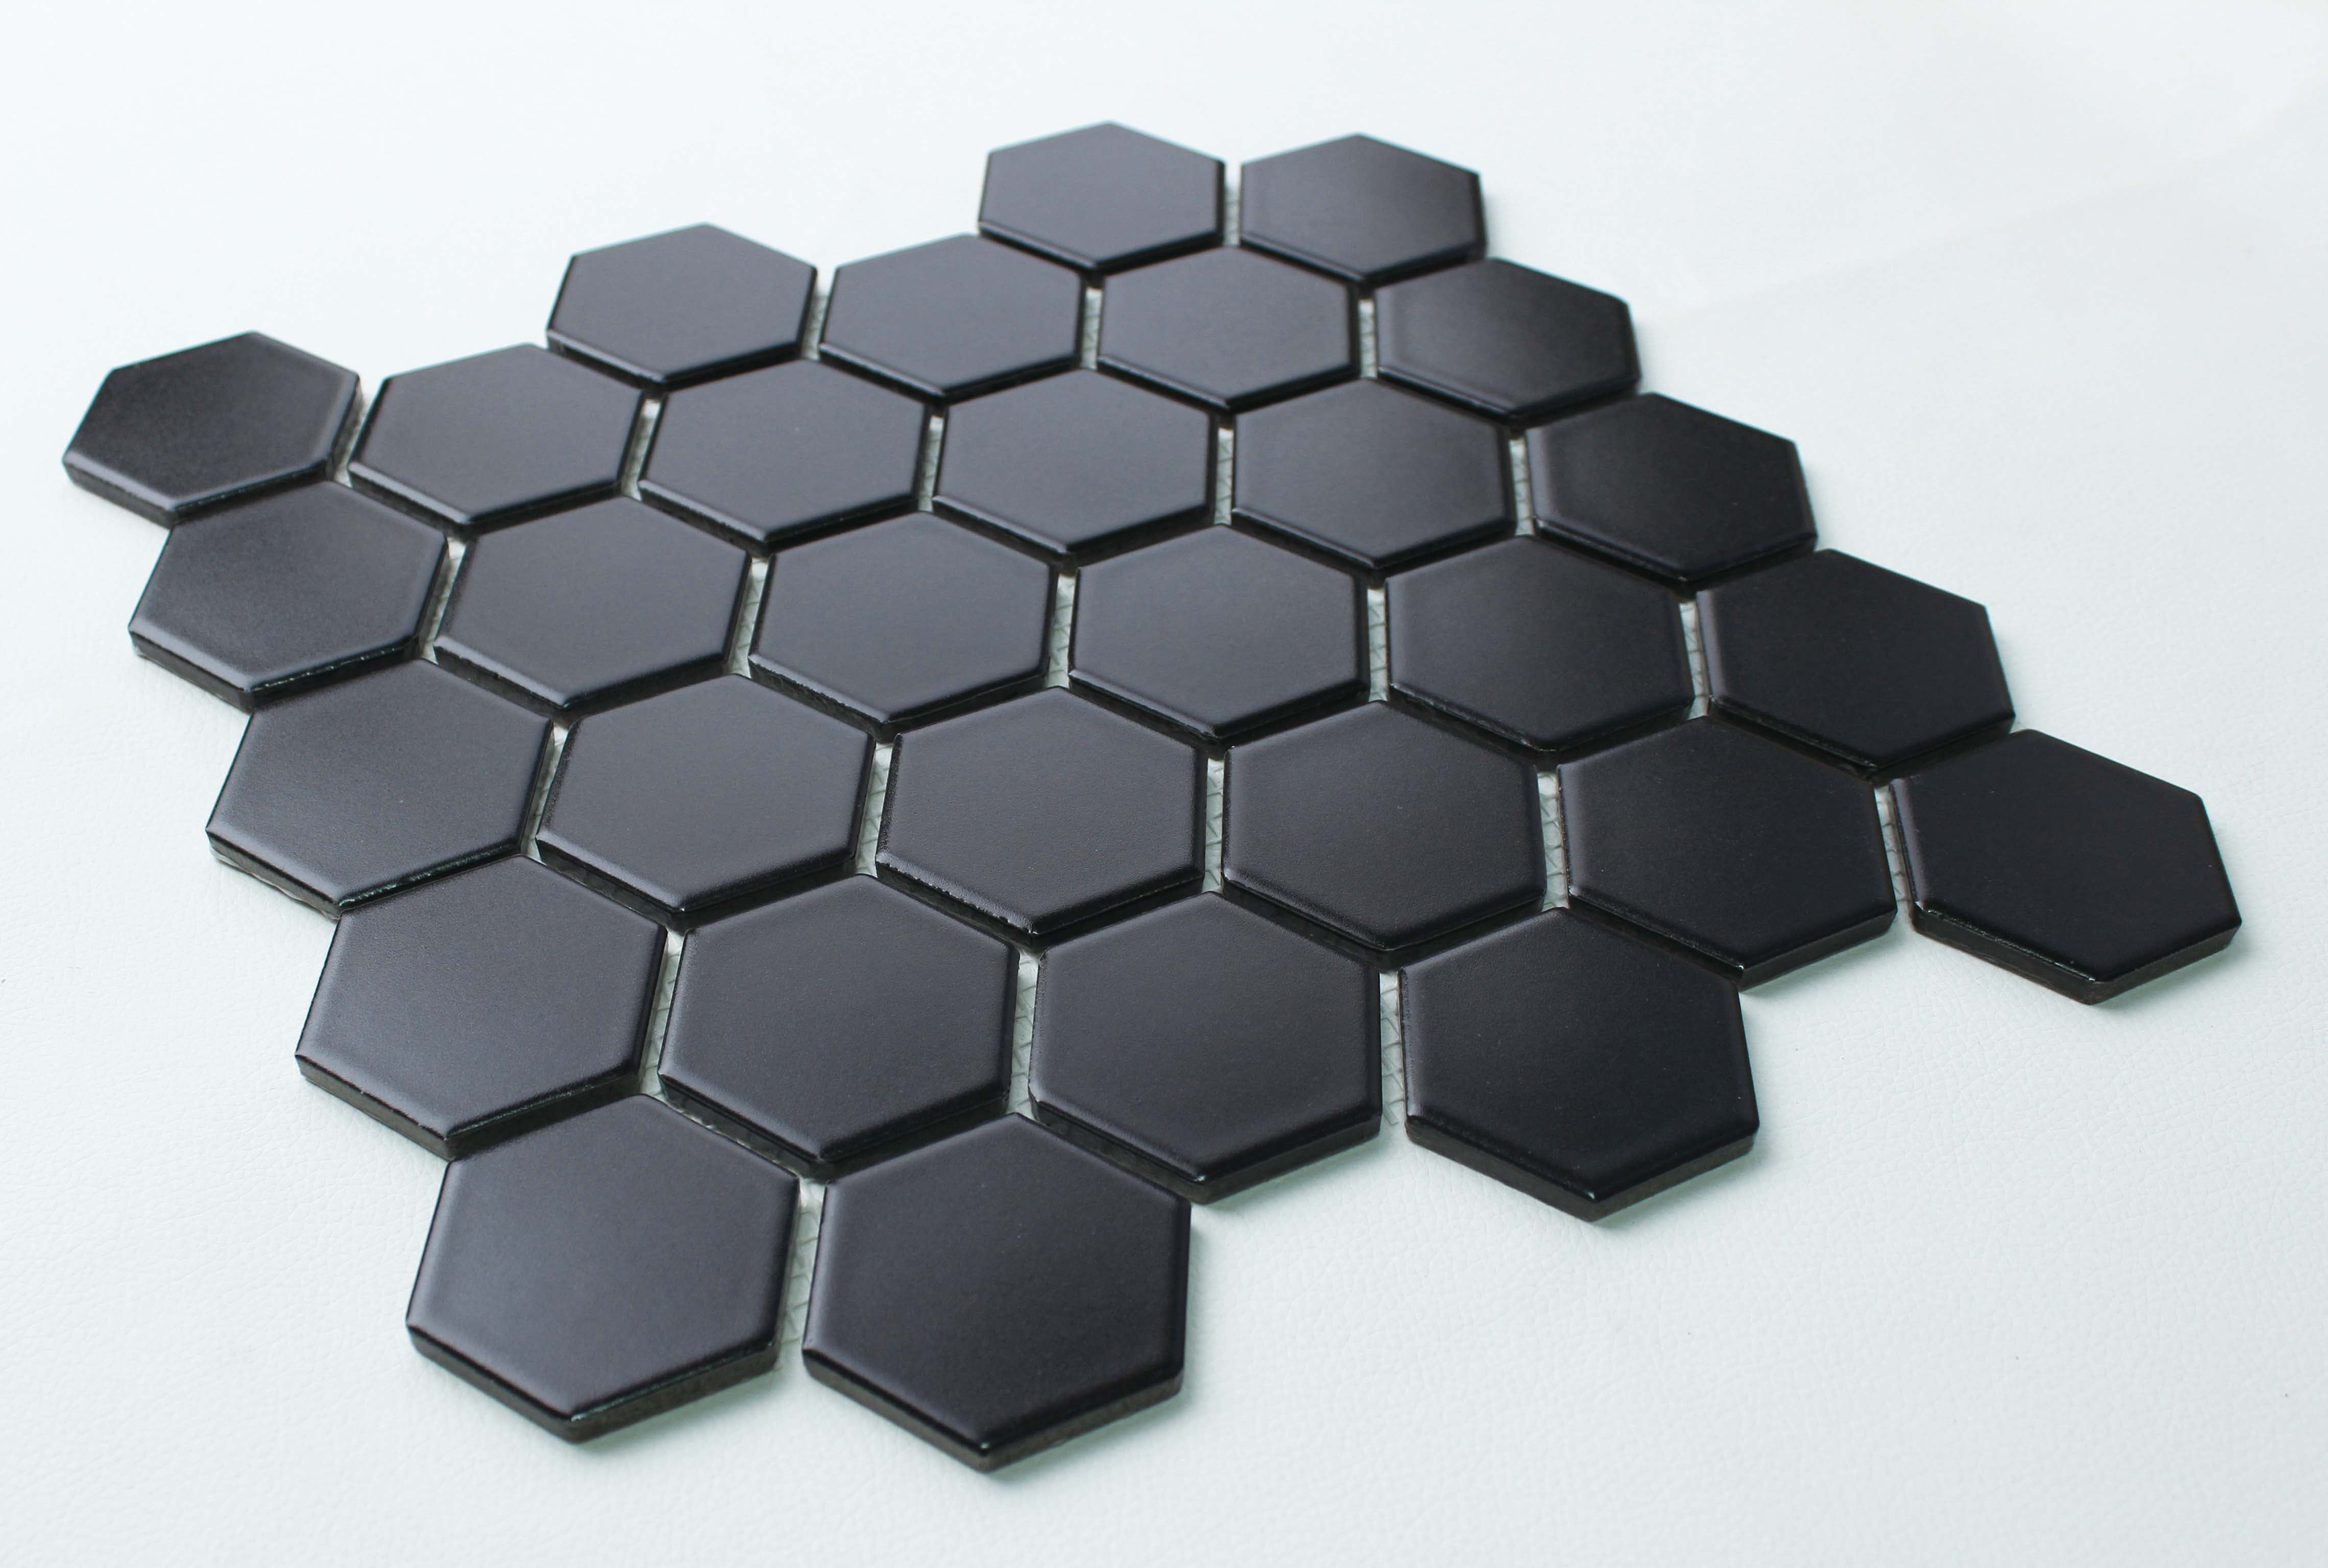 Hexagon Mosaic Floor Wall Tile, Matte Black Hexagon Bathroom Floor Tile